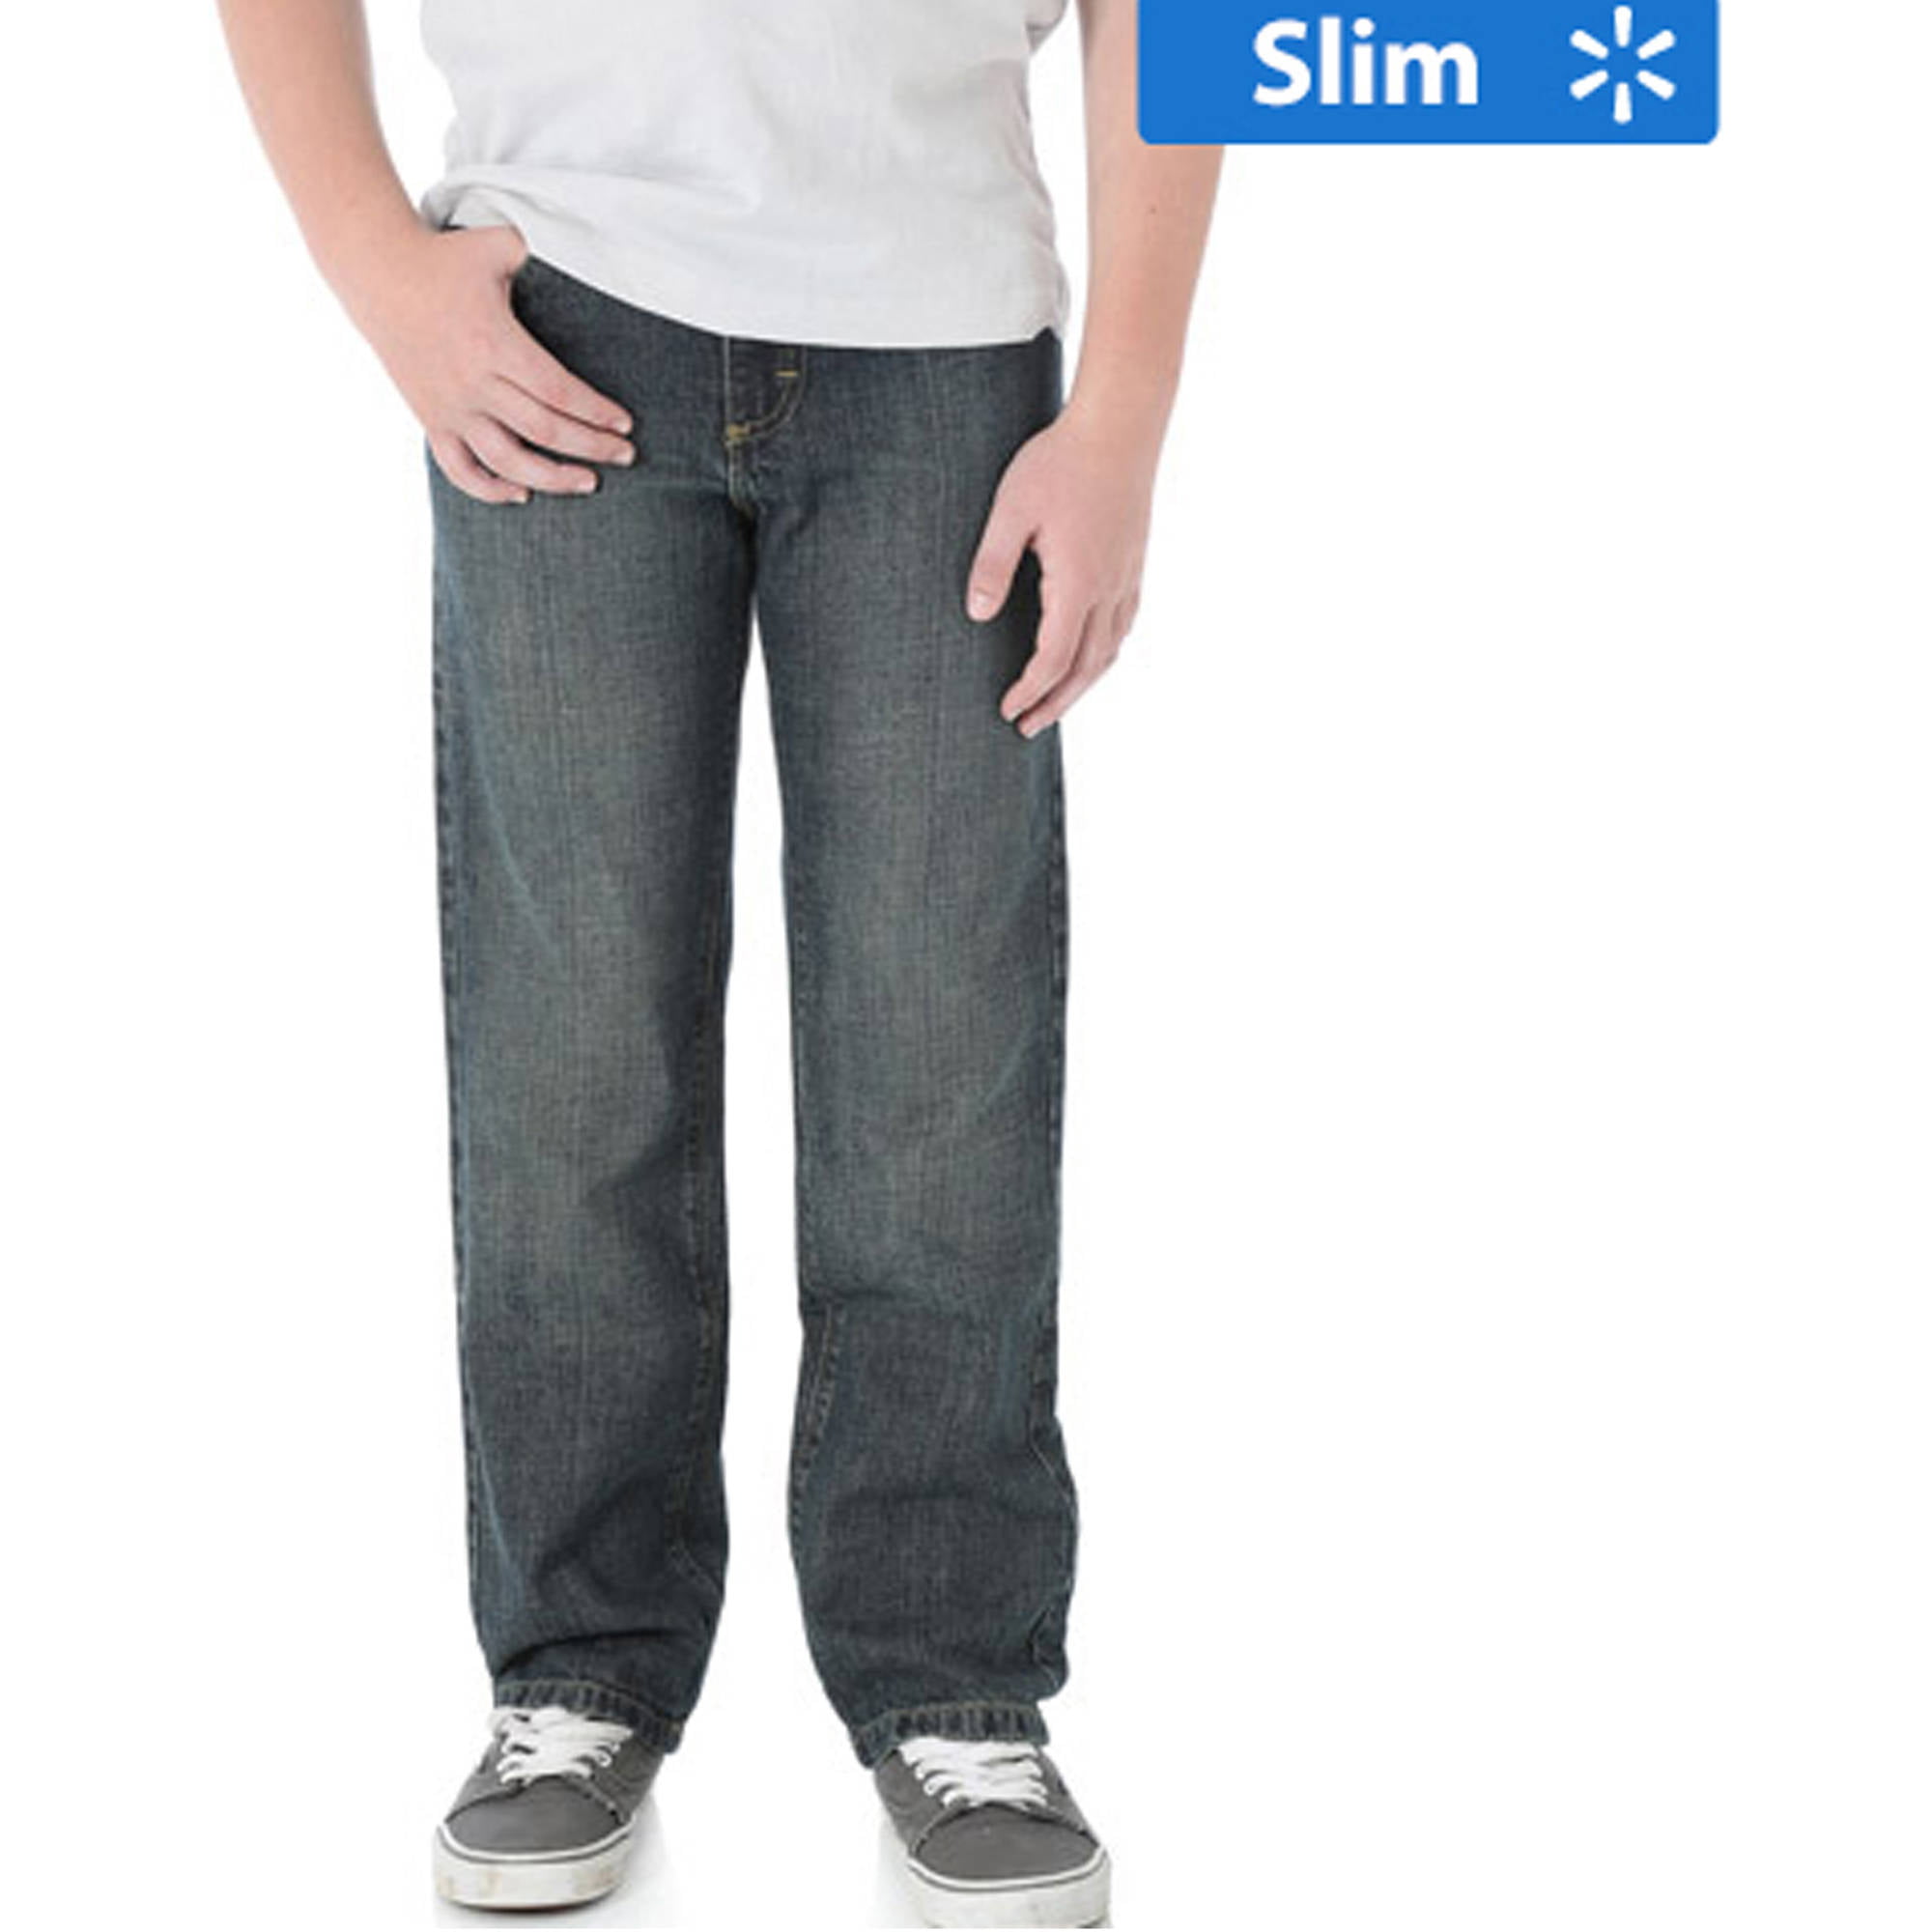 Buy > boys size 10 slim jeans > in stock